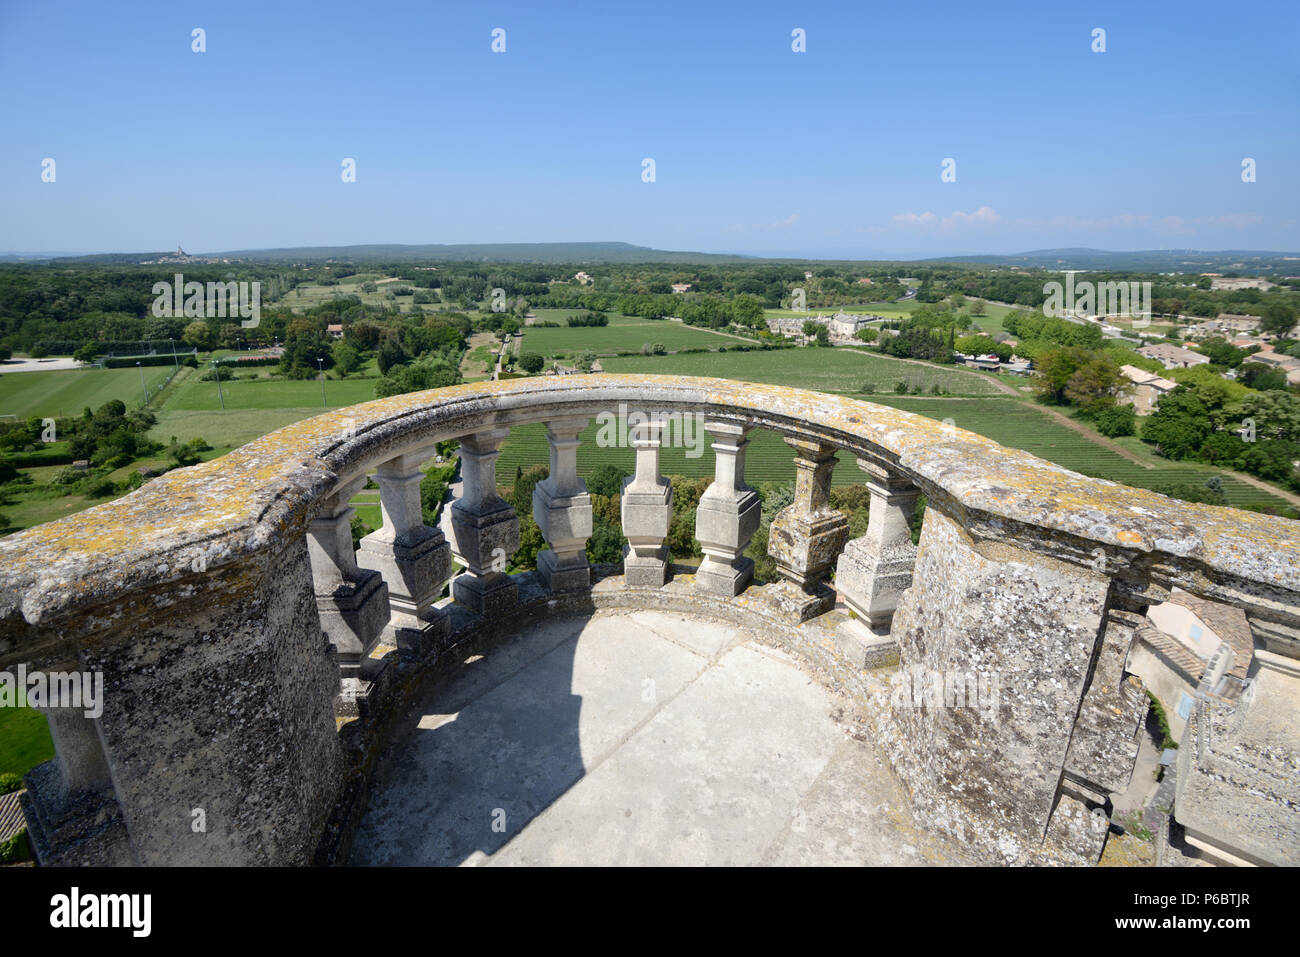 Panoramablick von der Terrasse von Grignan Château oder Château de Grignan auf die umliegende Landschaft und blankes Grignan Drôme Provence Frankreich Stockfoto